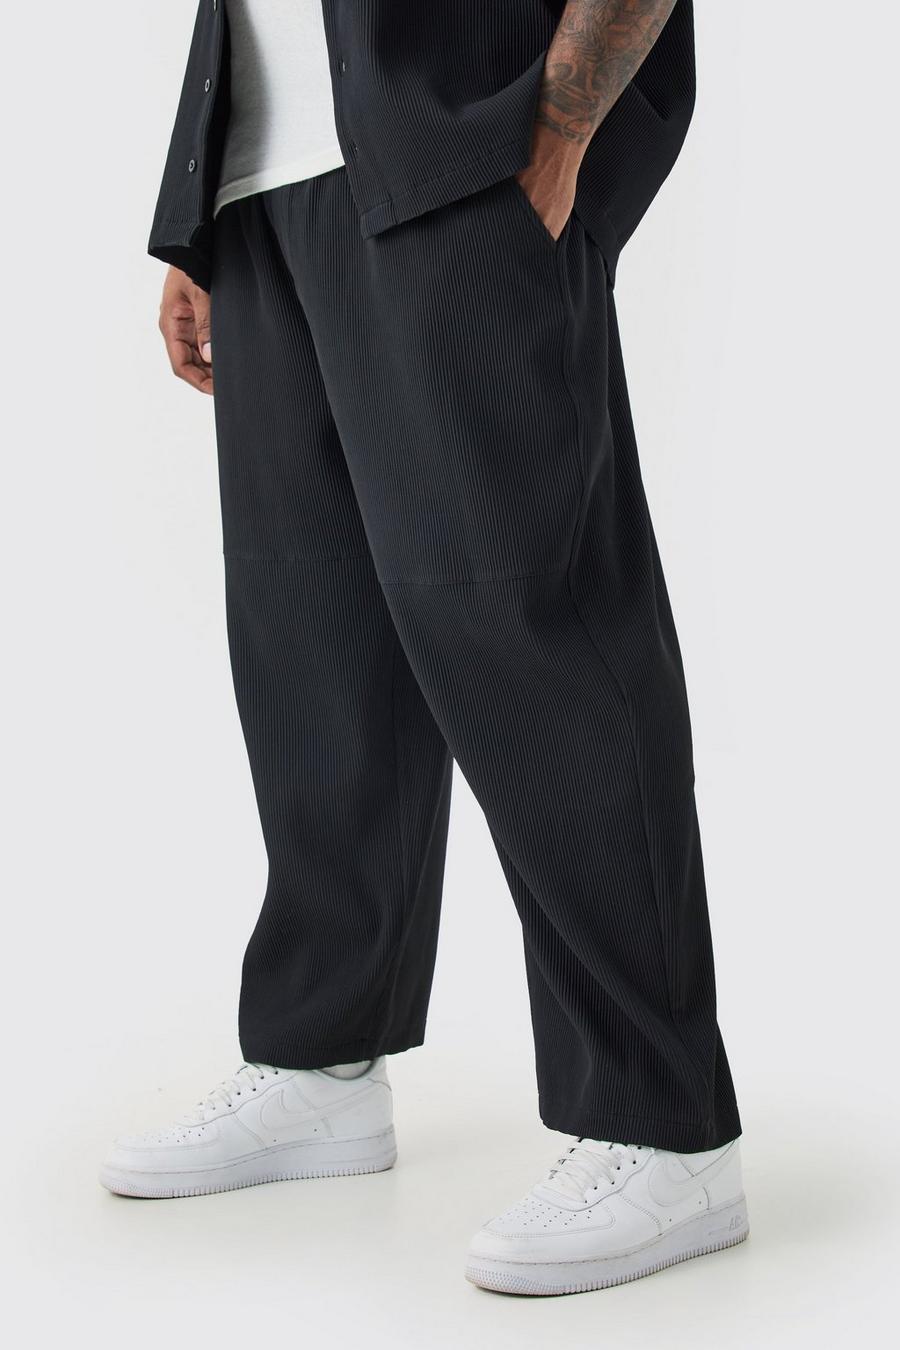 Grande taille - Pantalon court plissé, Black